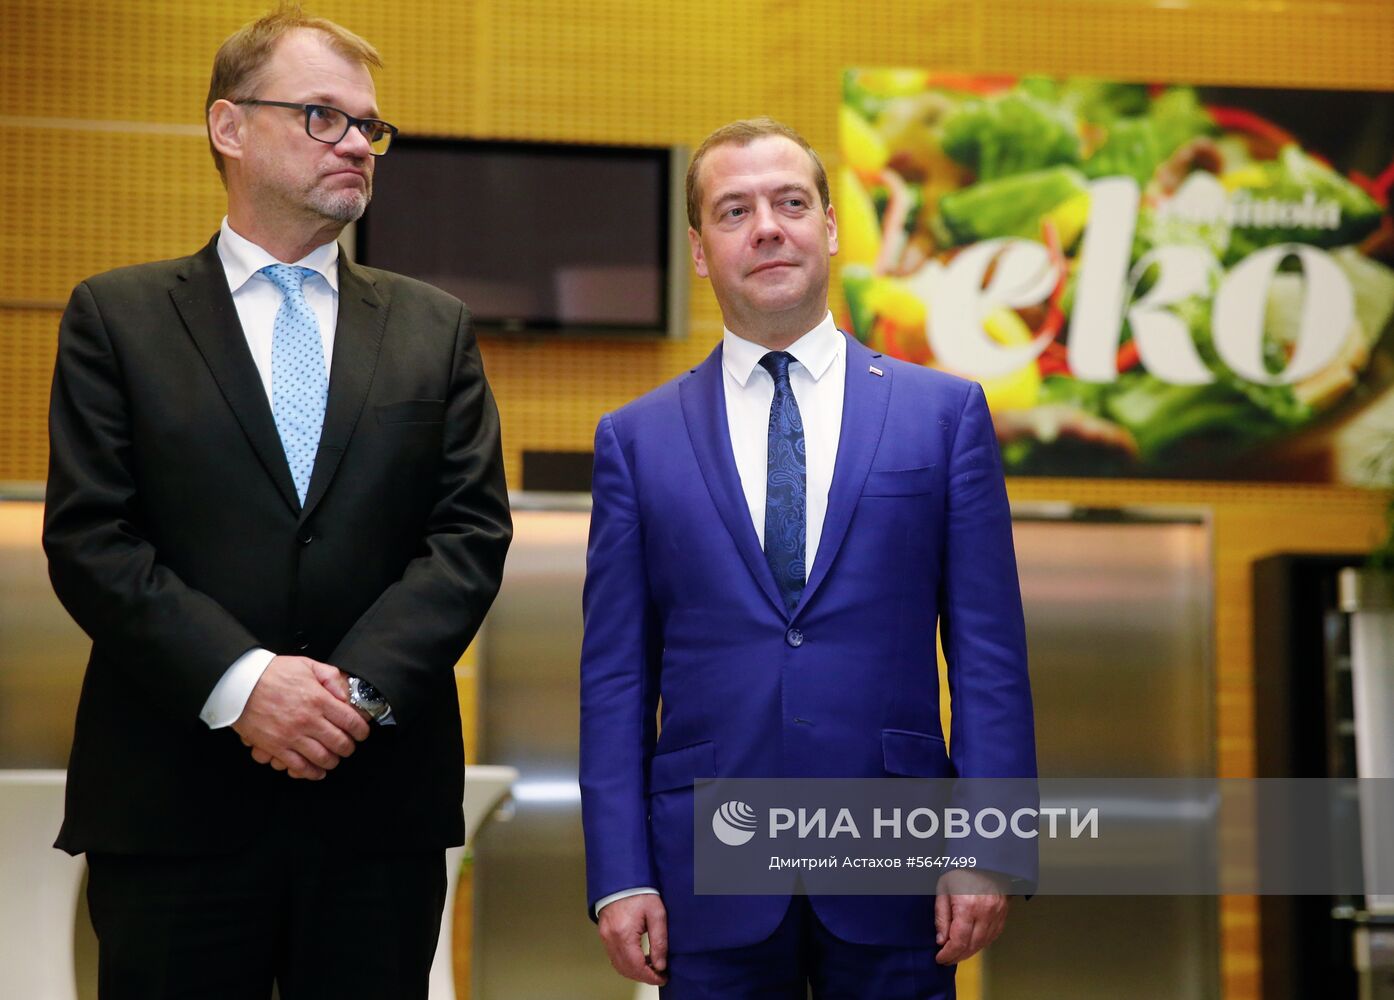 Рабочий визит премьер-министра РФ Д. Медведева в Финляндию